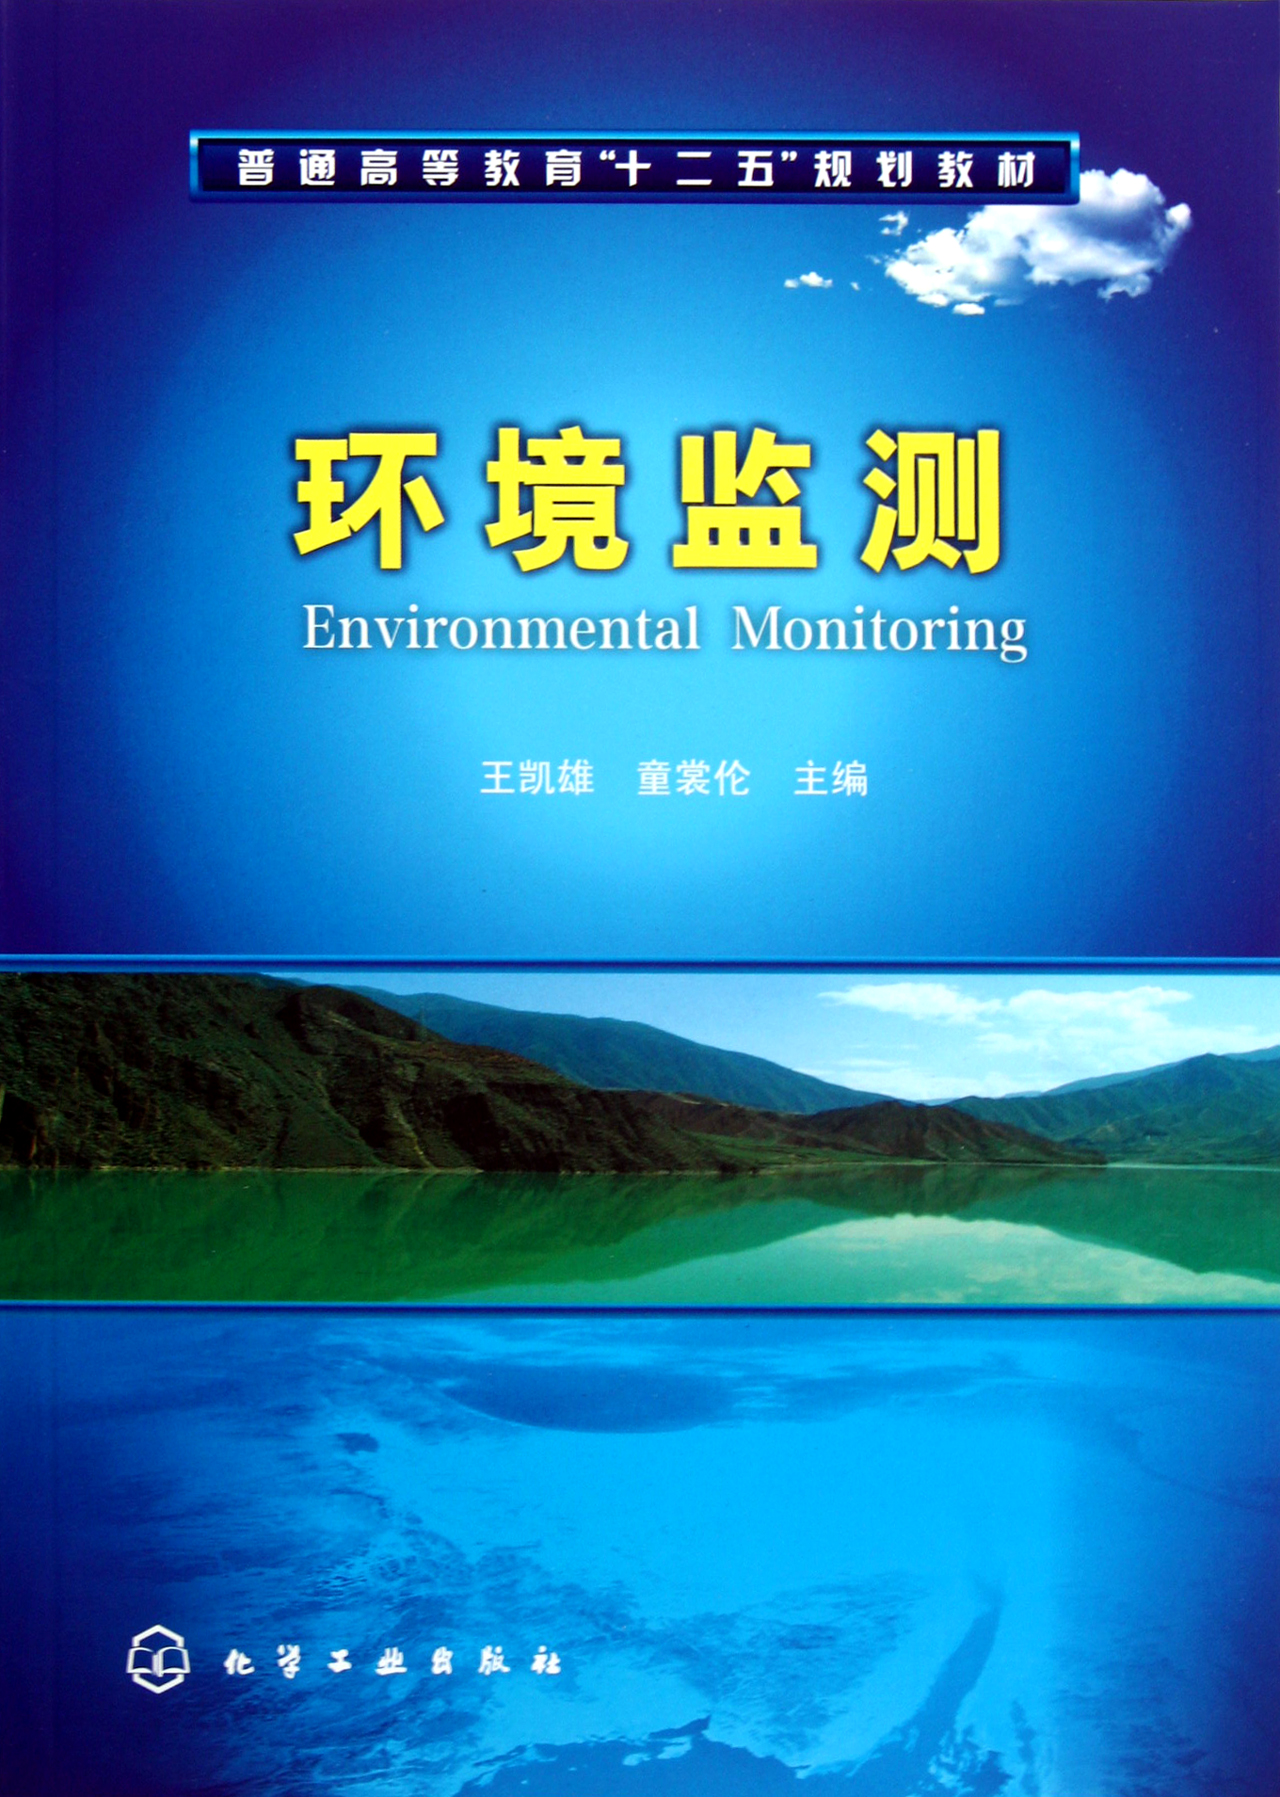 ＂Environmental Monitoring＂